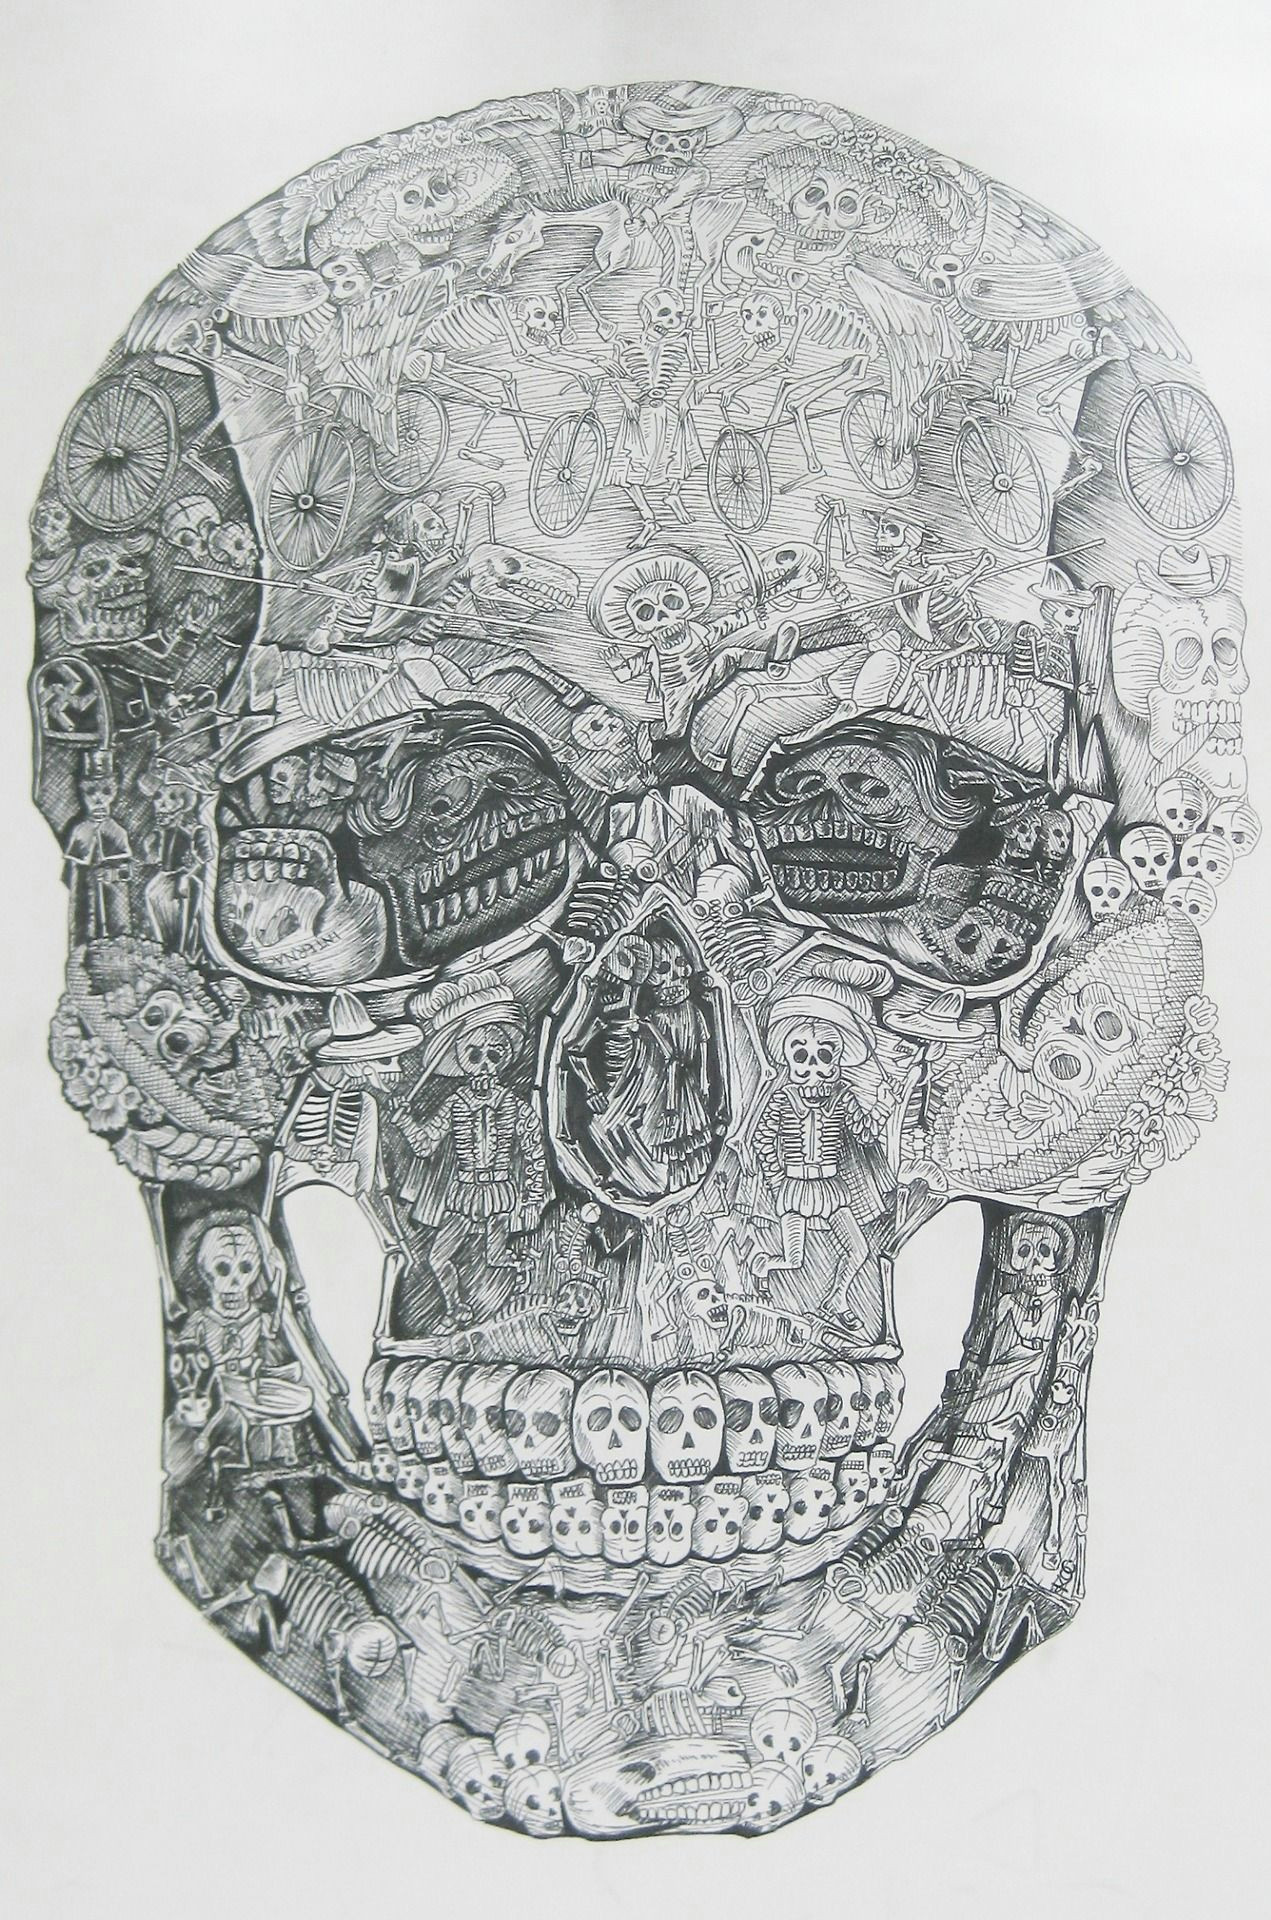 Drawing A Skull and Crossbones Pin by Tara Anna Maria On Skull Obsession Pinterest Skull Art